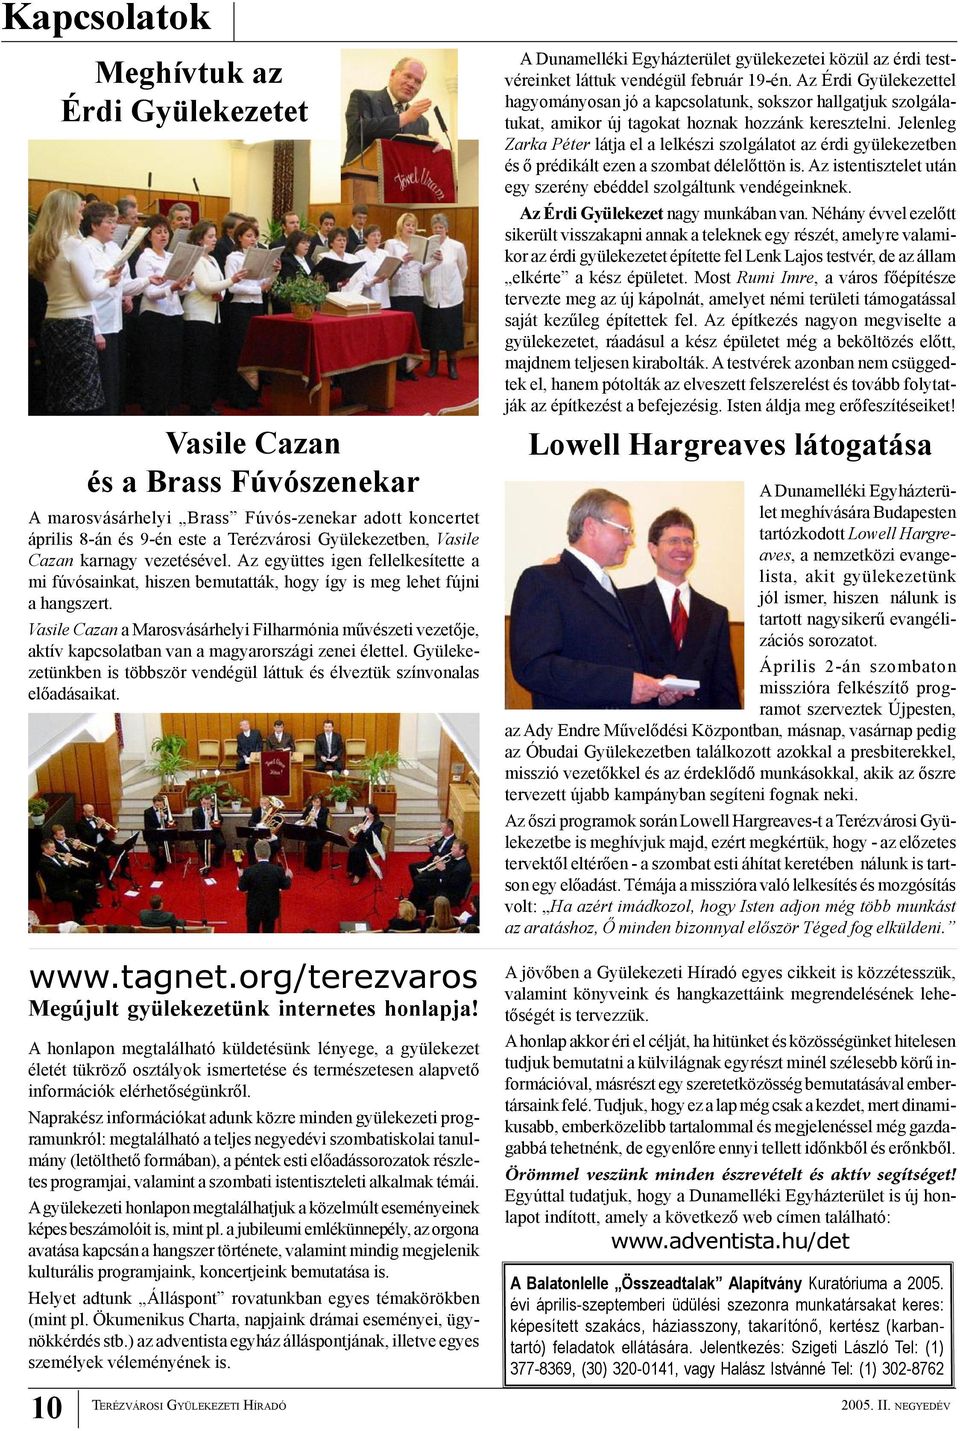 Vasile Cazan a Marosvásárhelyi Filharmónia művészeti vezetője, aktív kapcsolatban van a magyarországi zenei élettel. Gyülekezetünkben is többször vendégül láttuk és élveztük színvonalas előadásaikat.